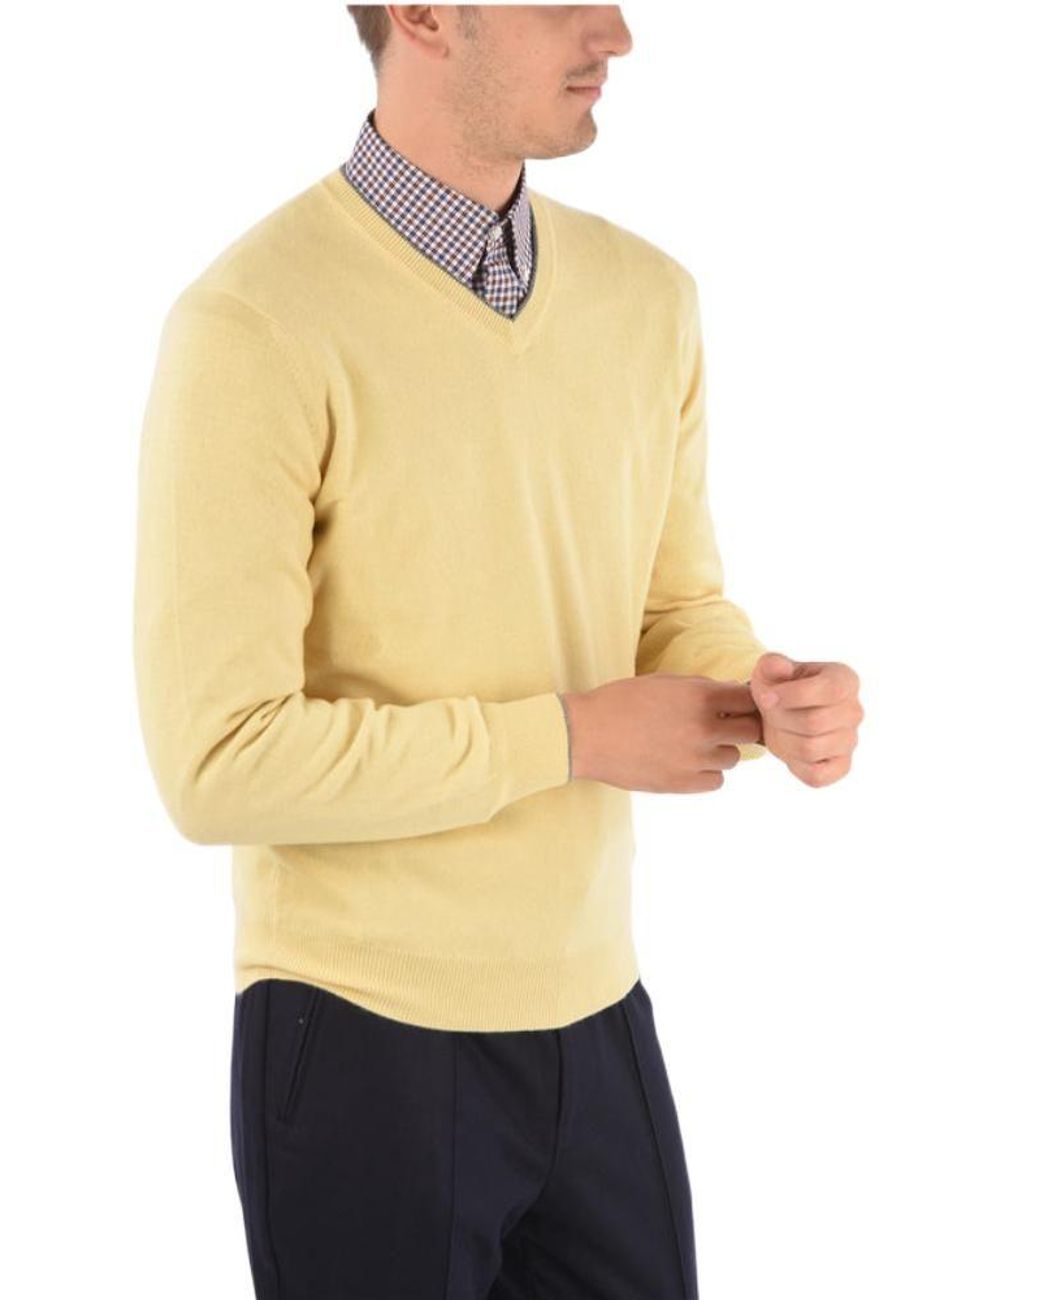 Pullover aus Baumwolle Mytheresa Herren Kleidung Pullover & Strickjacken Pullover Strickpullover 